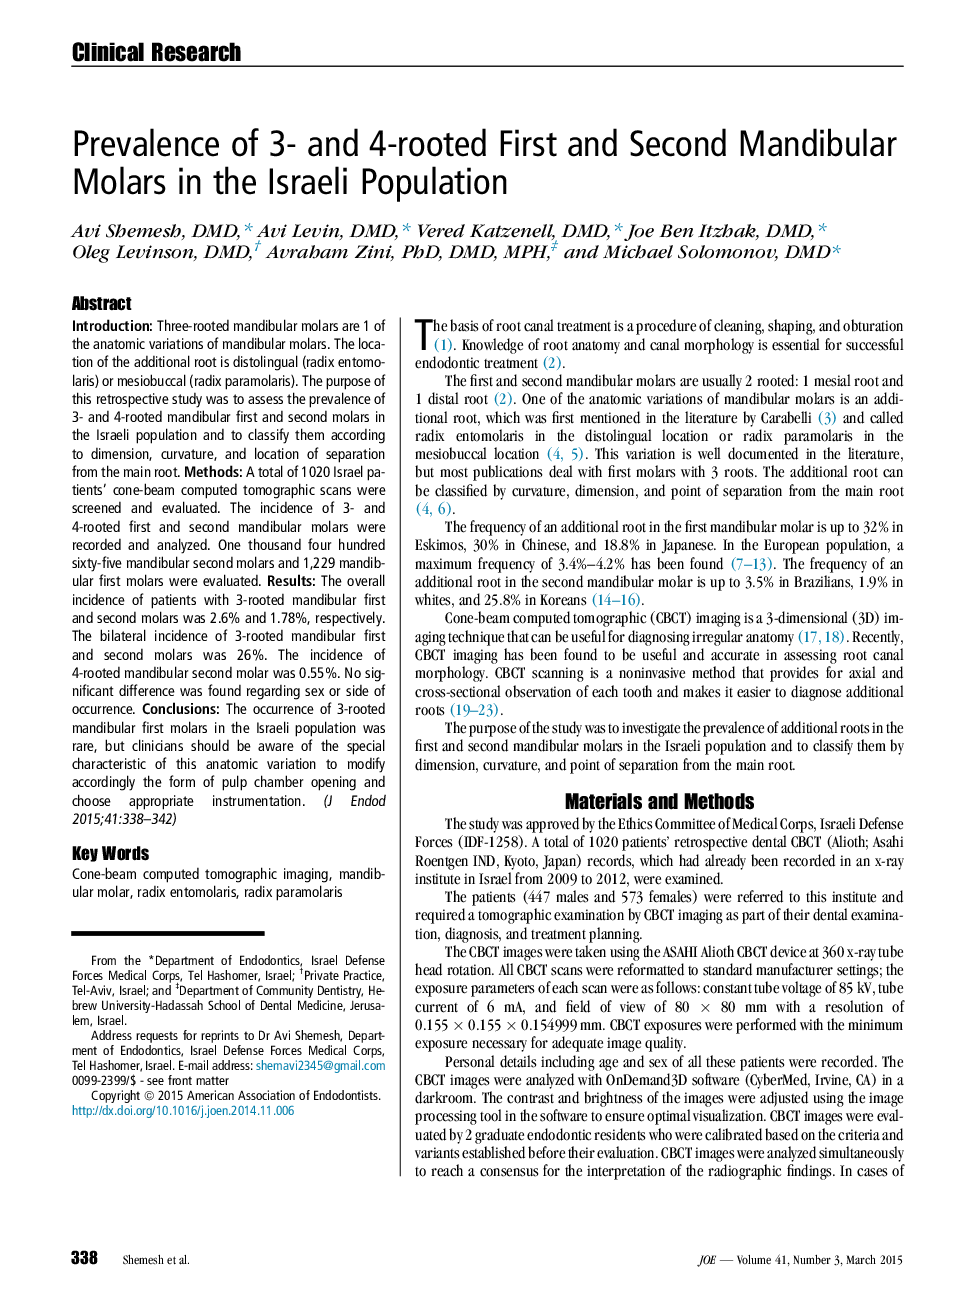 شیوع مولرهای مندیبول اول و دوم در جمعیت اسرائیل 3 و 4 ریشه 